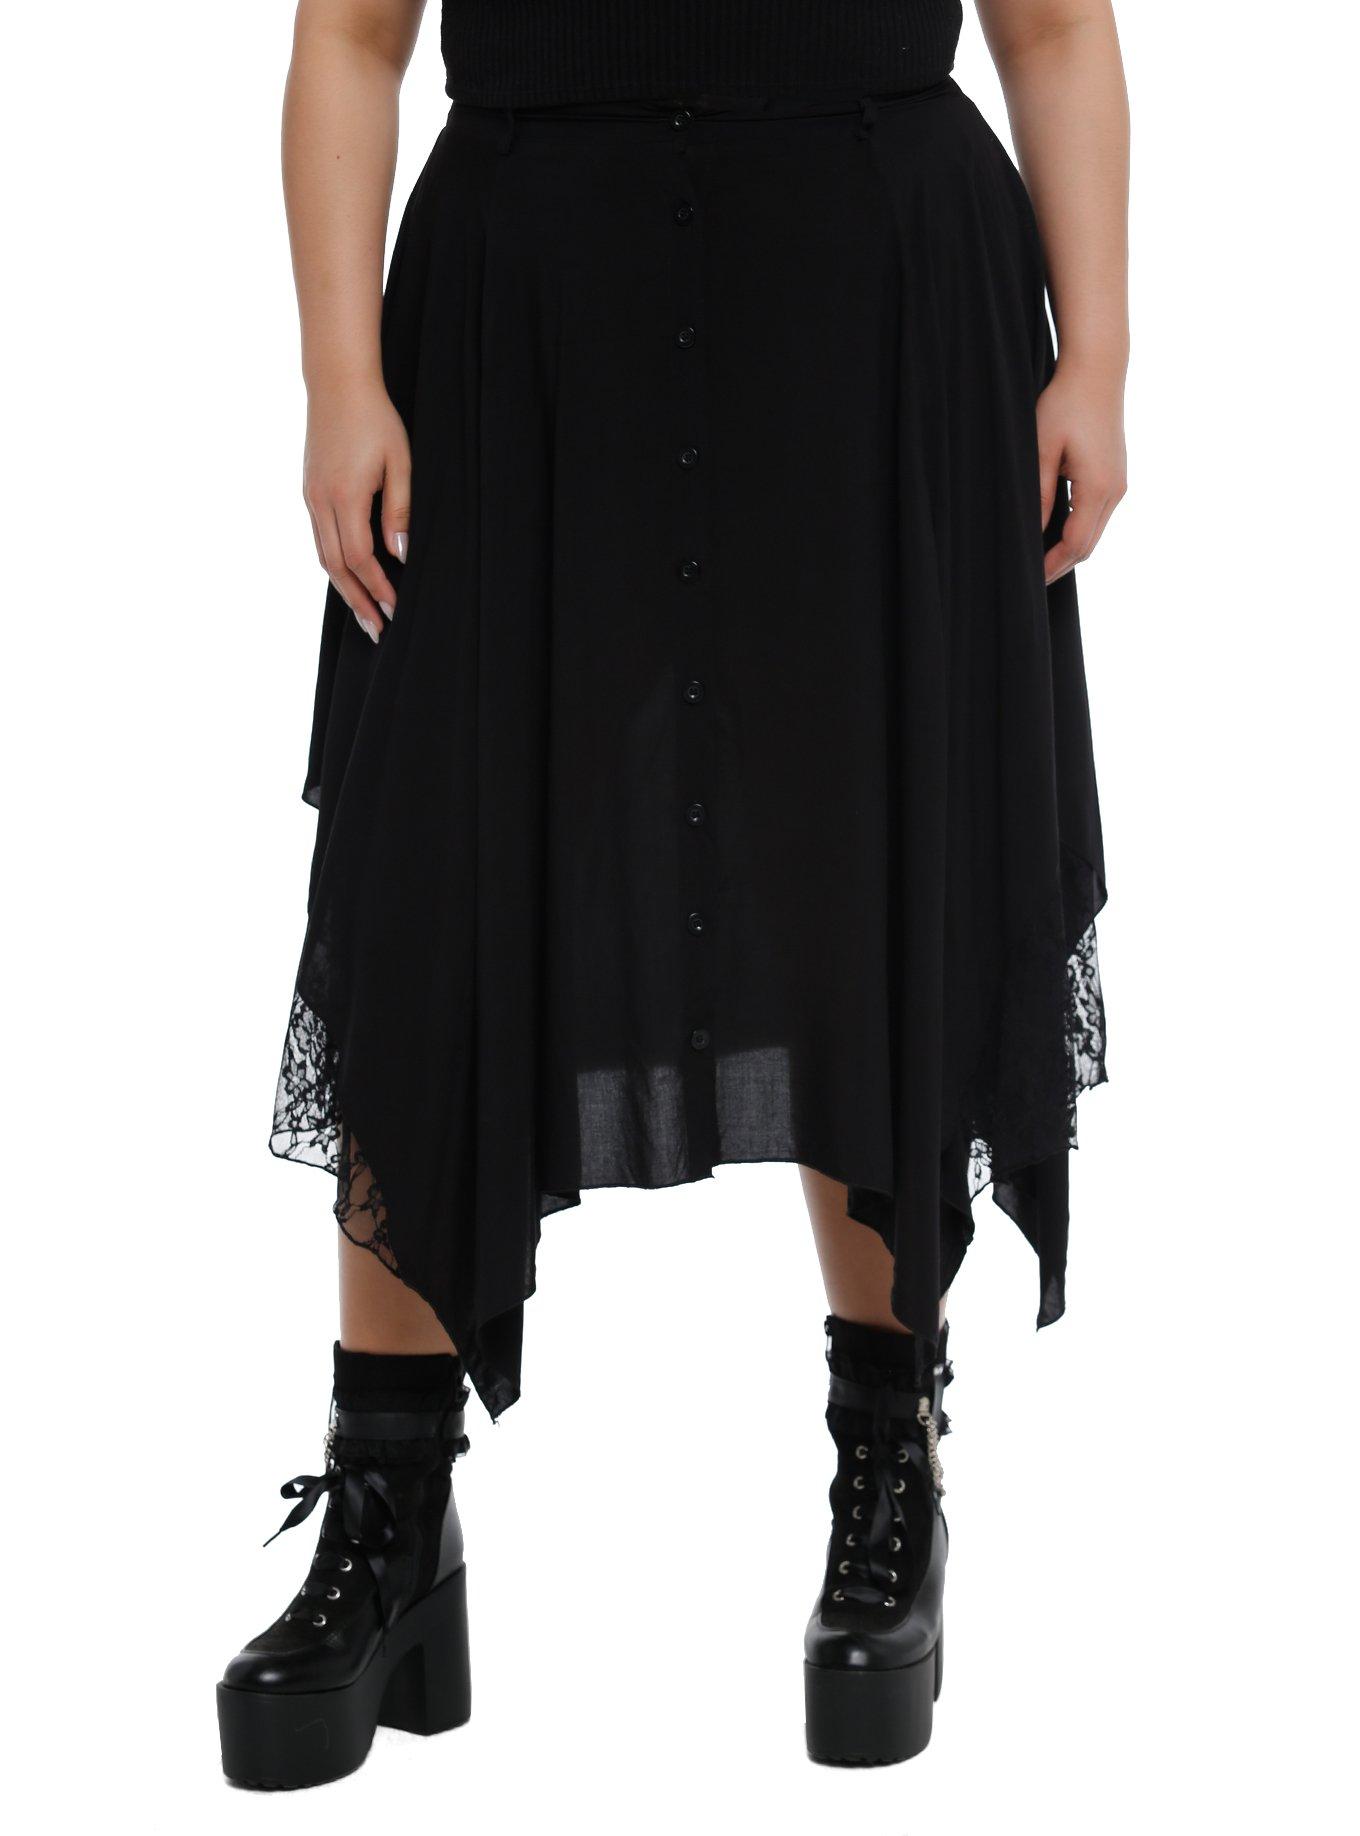 Black Lace Hanky Hem Midi Skirt Plus Size | Hot Topic